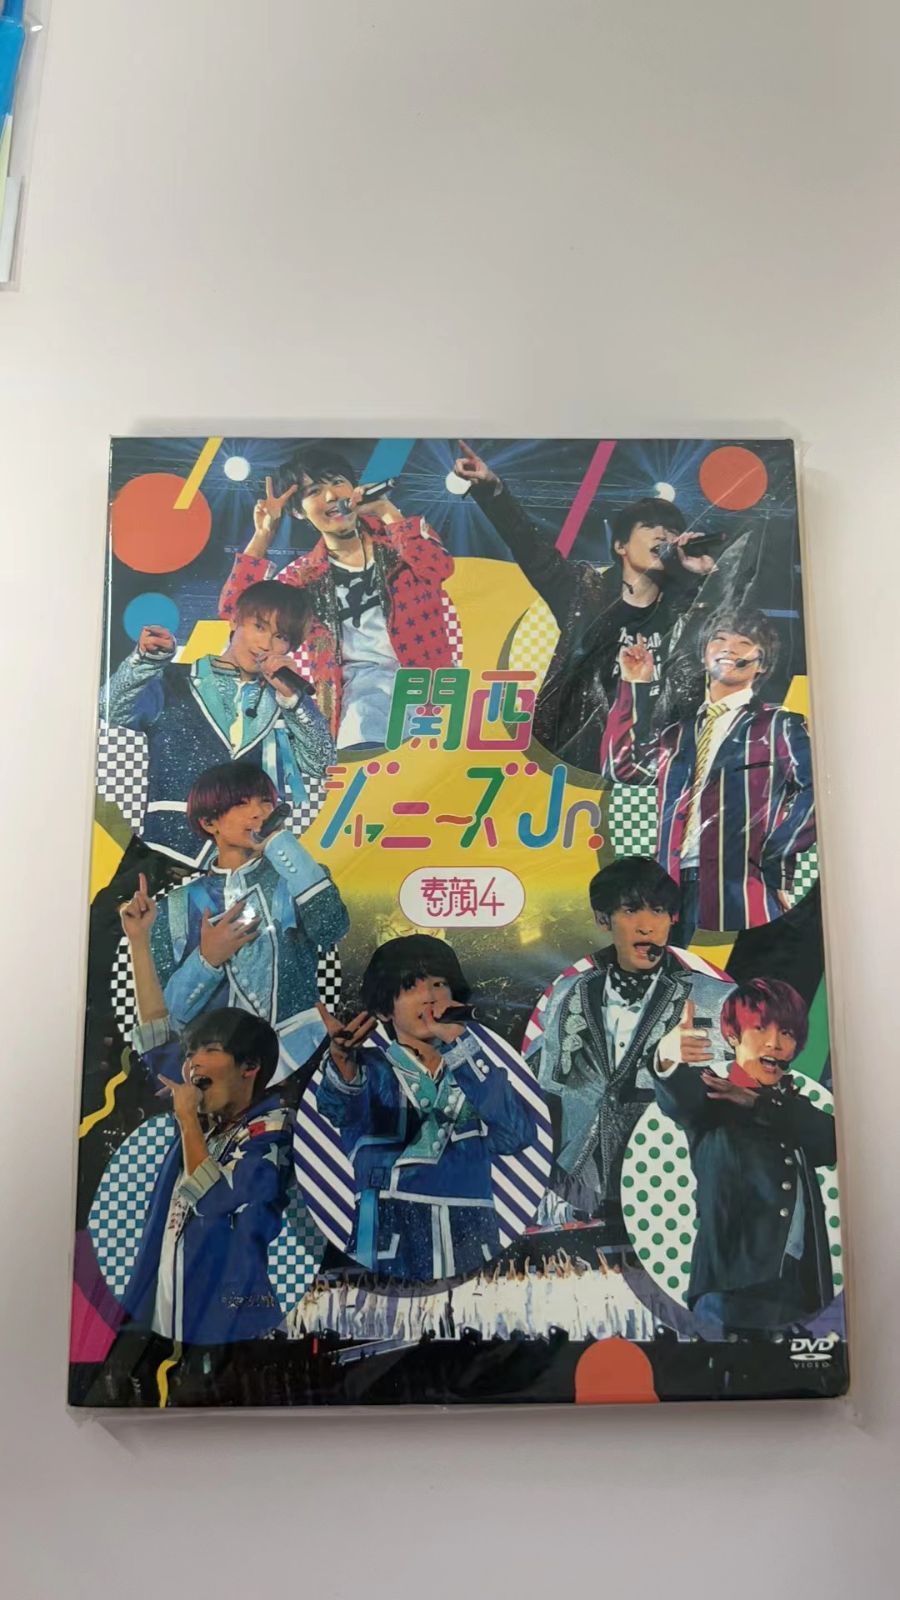 538) 素顔4 関西ジャニーズJr.盤 DVD 特典ポストカード付き+α 